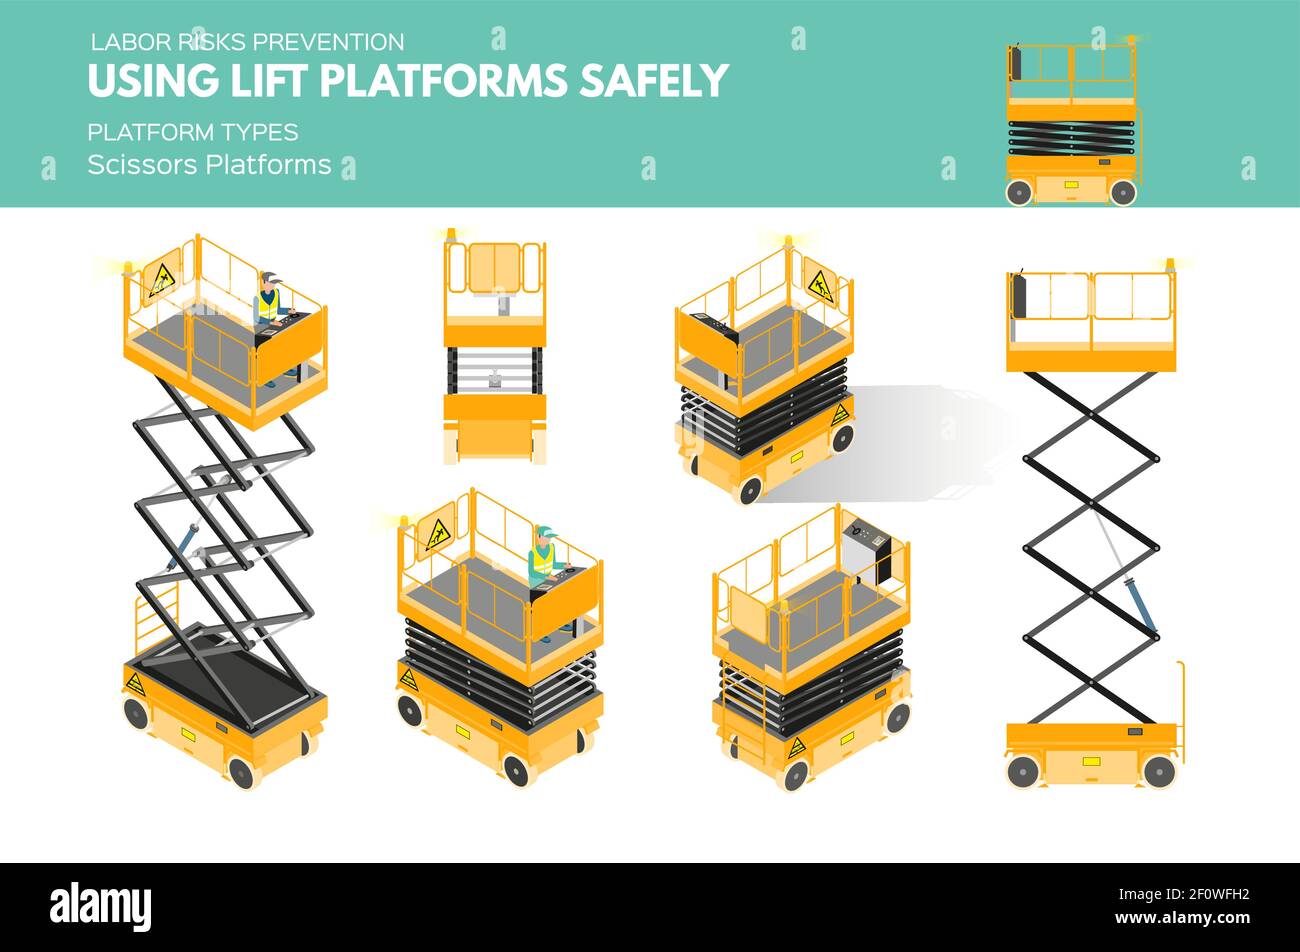 Isometrisch weiß isolierte Aufzugsplattformen Arbeitsrisiko Prävention Informationen über Plattformtypen auf Scheren Plattform Stock Vektor